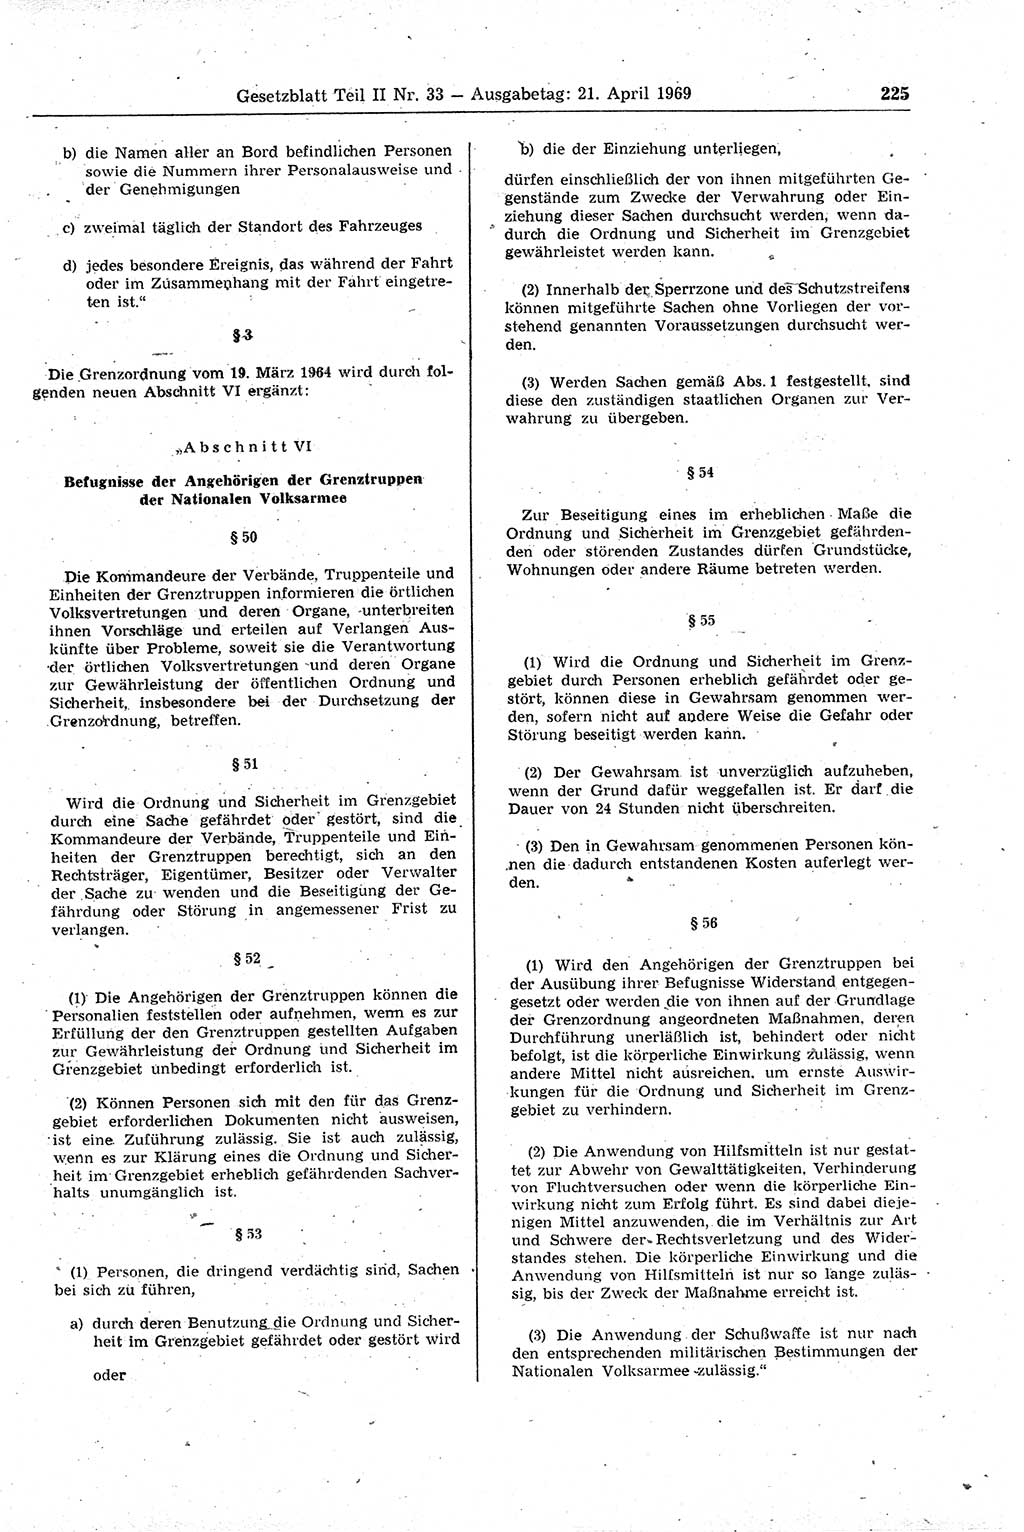 Gesetzblatt (GBl.) der Deutschen Demokratischen Republik (DDR) Teil ⅠⅠ 1969, Seite 225 (GBl. DDR ⅠⅠ 1969, S. 225)